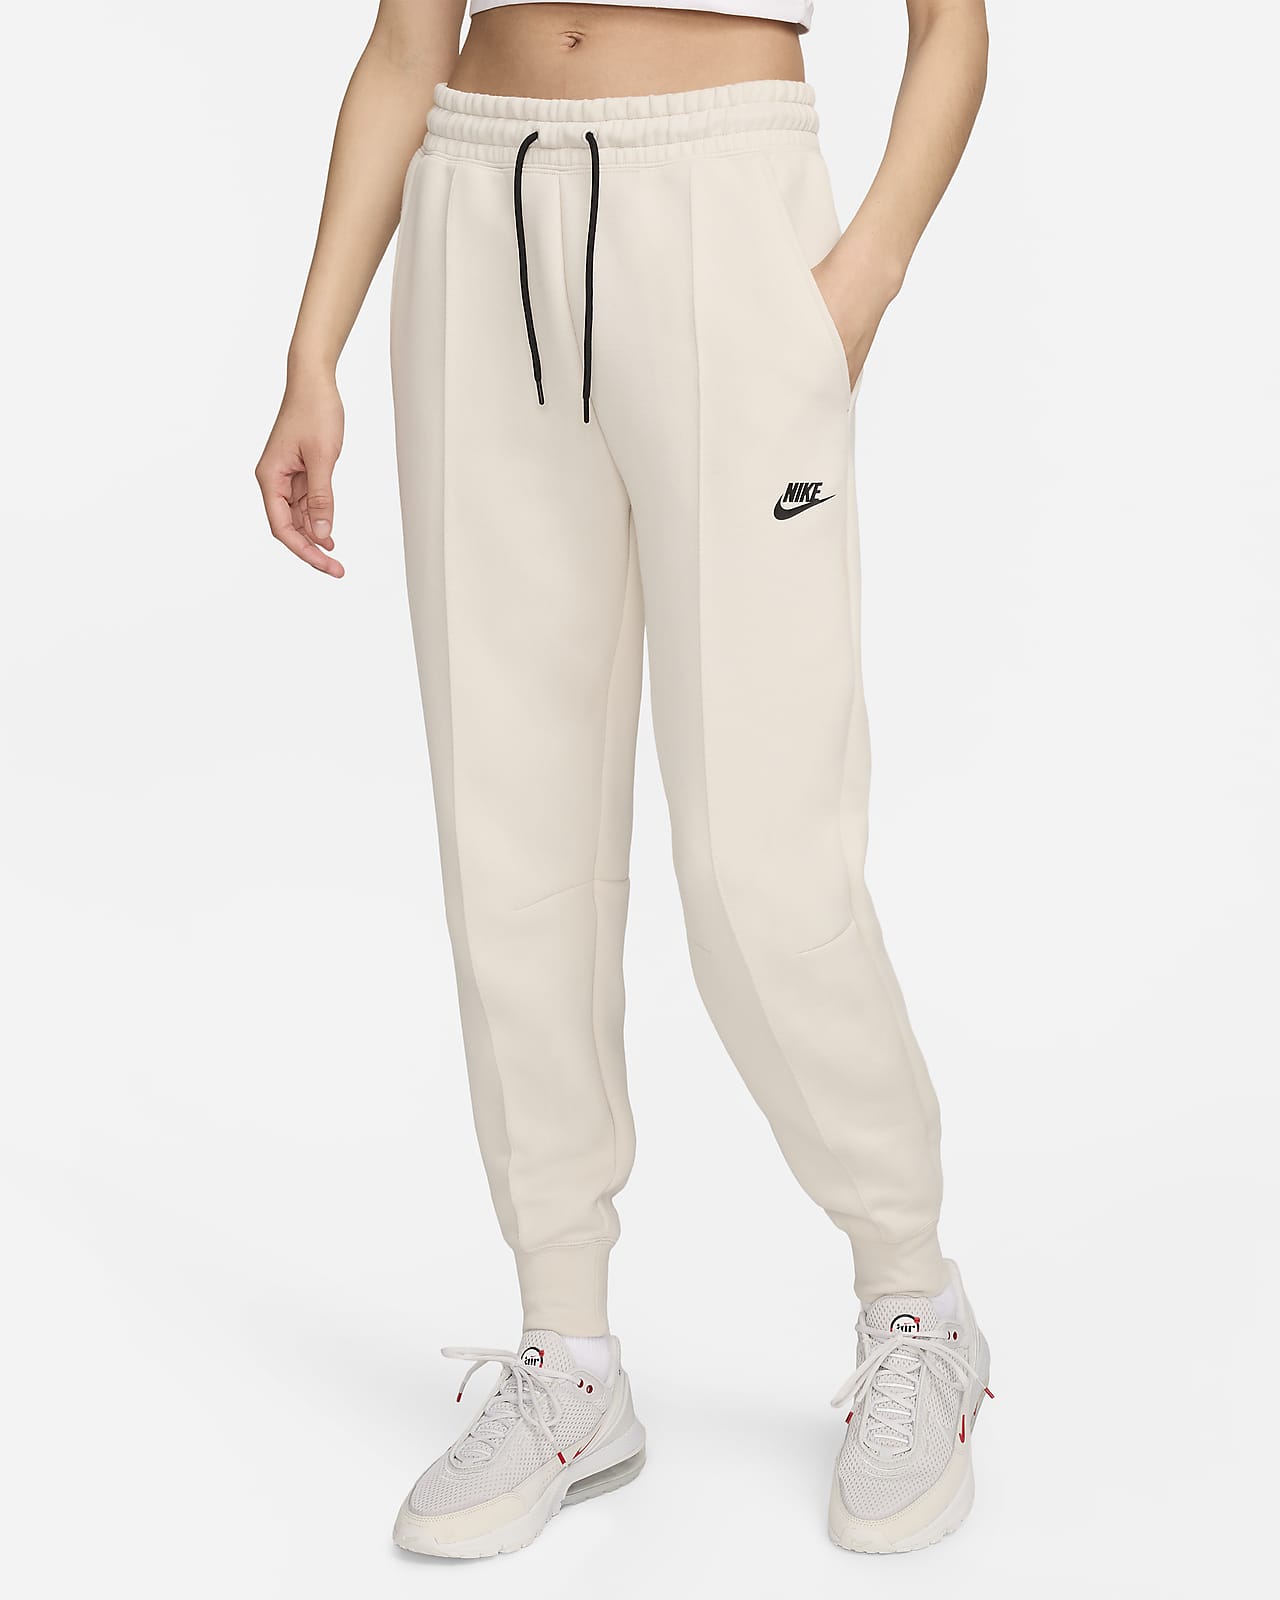 Γυναικείο παντελόνι φόρμας μεσαίου καβάλου Nike Sportswear Tech Fleece